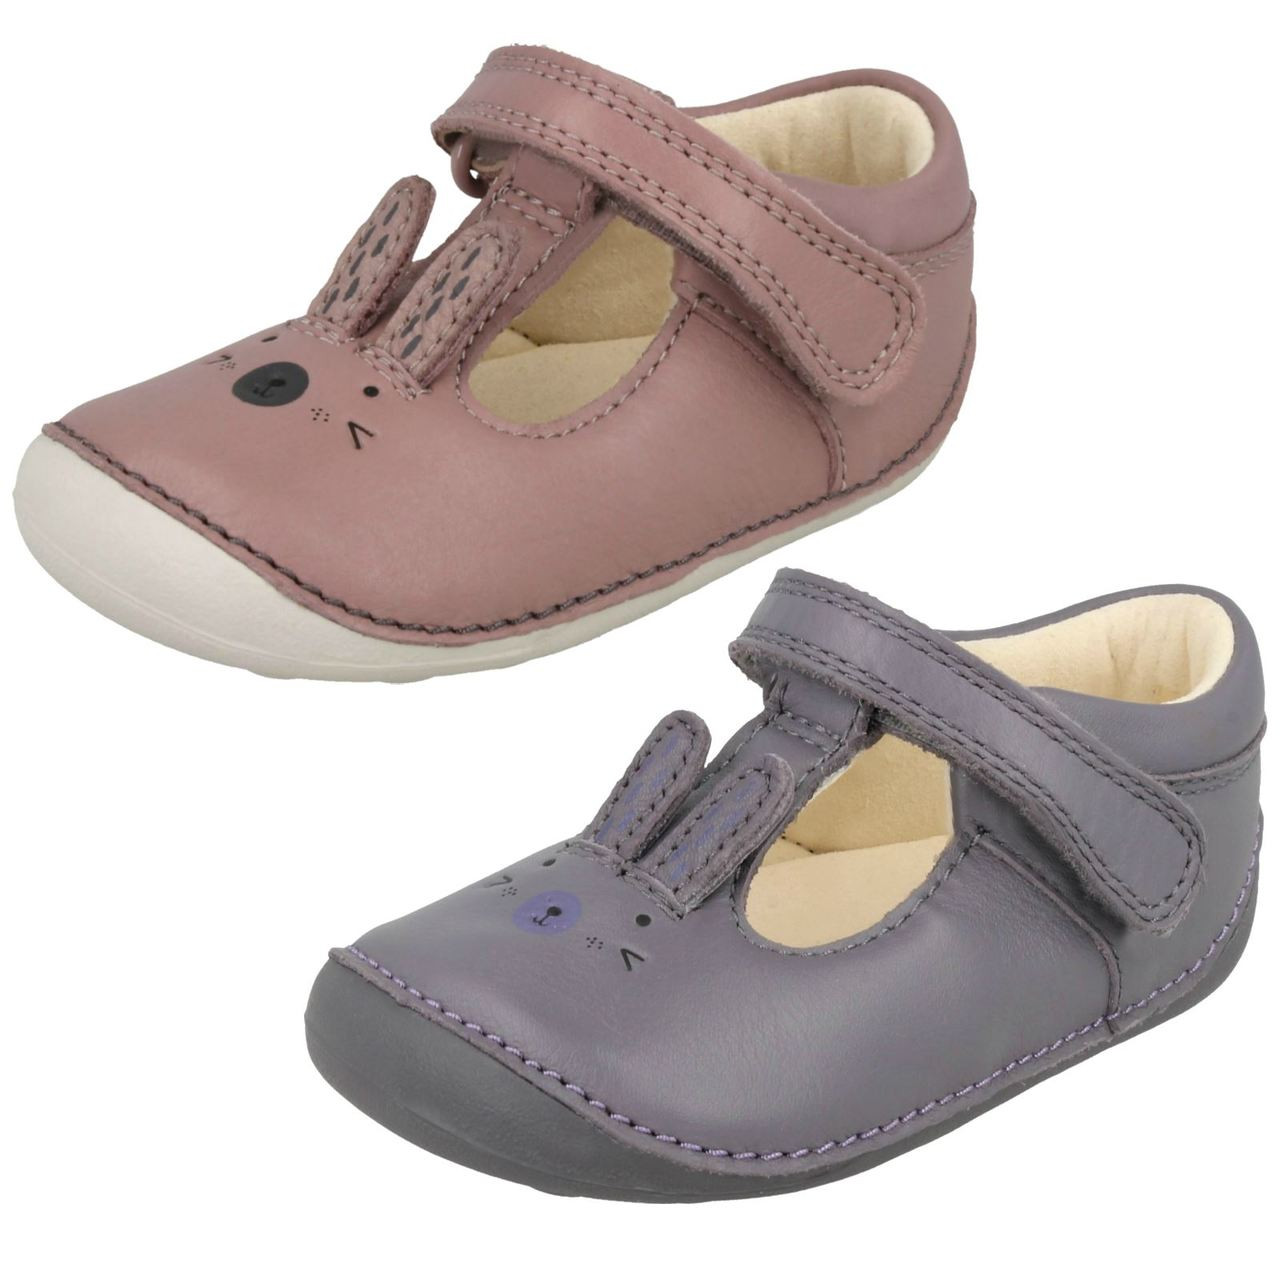 gå på pension Plenarmøde Faldgruber Girls Clarks First Shoes With Rabbit Design Little Glo